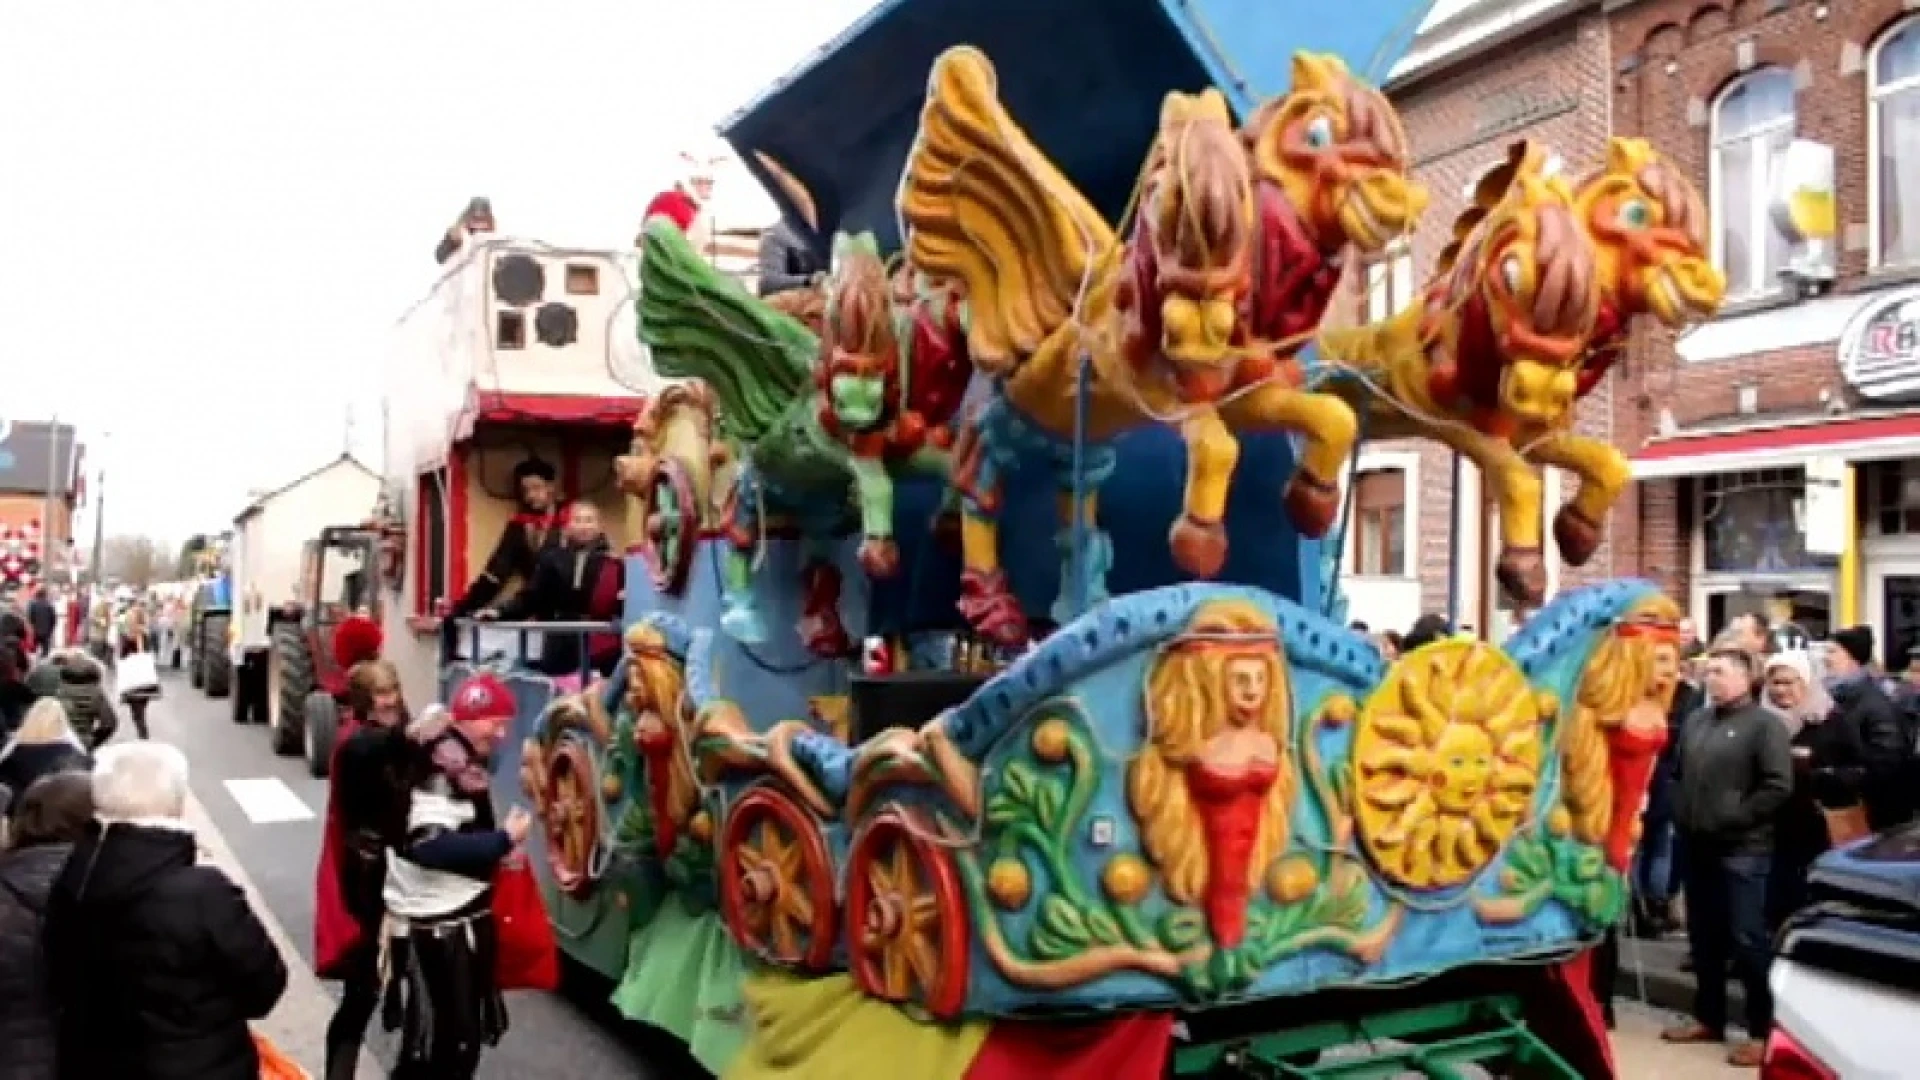 Dit jaar carnaval zonder confetti in Scherpenheuvel-Zichem?